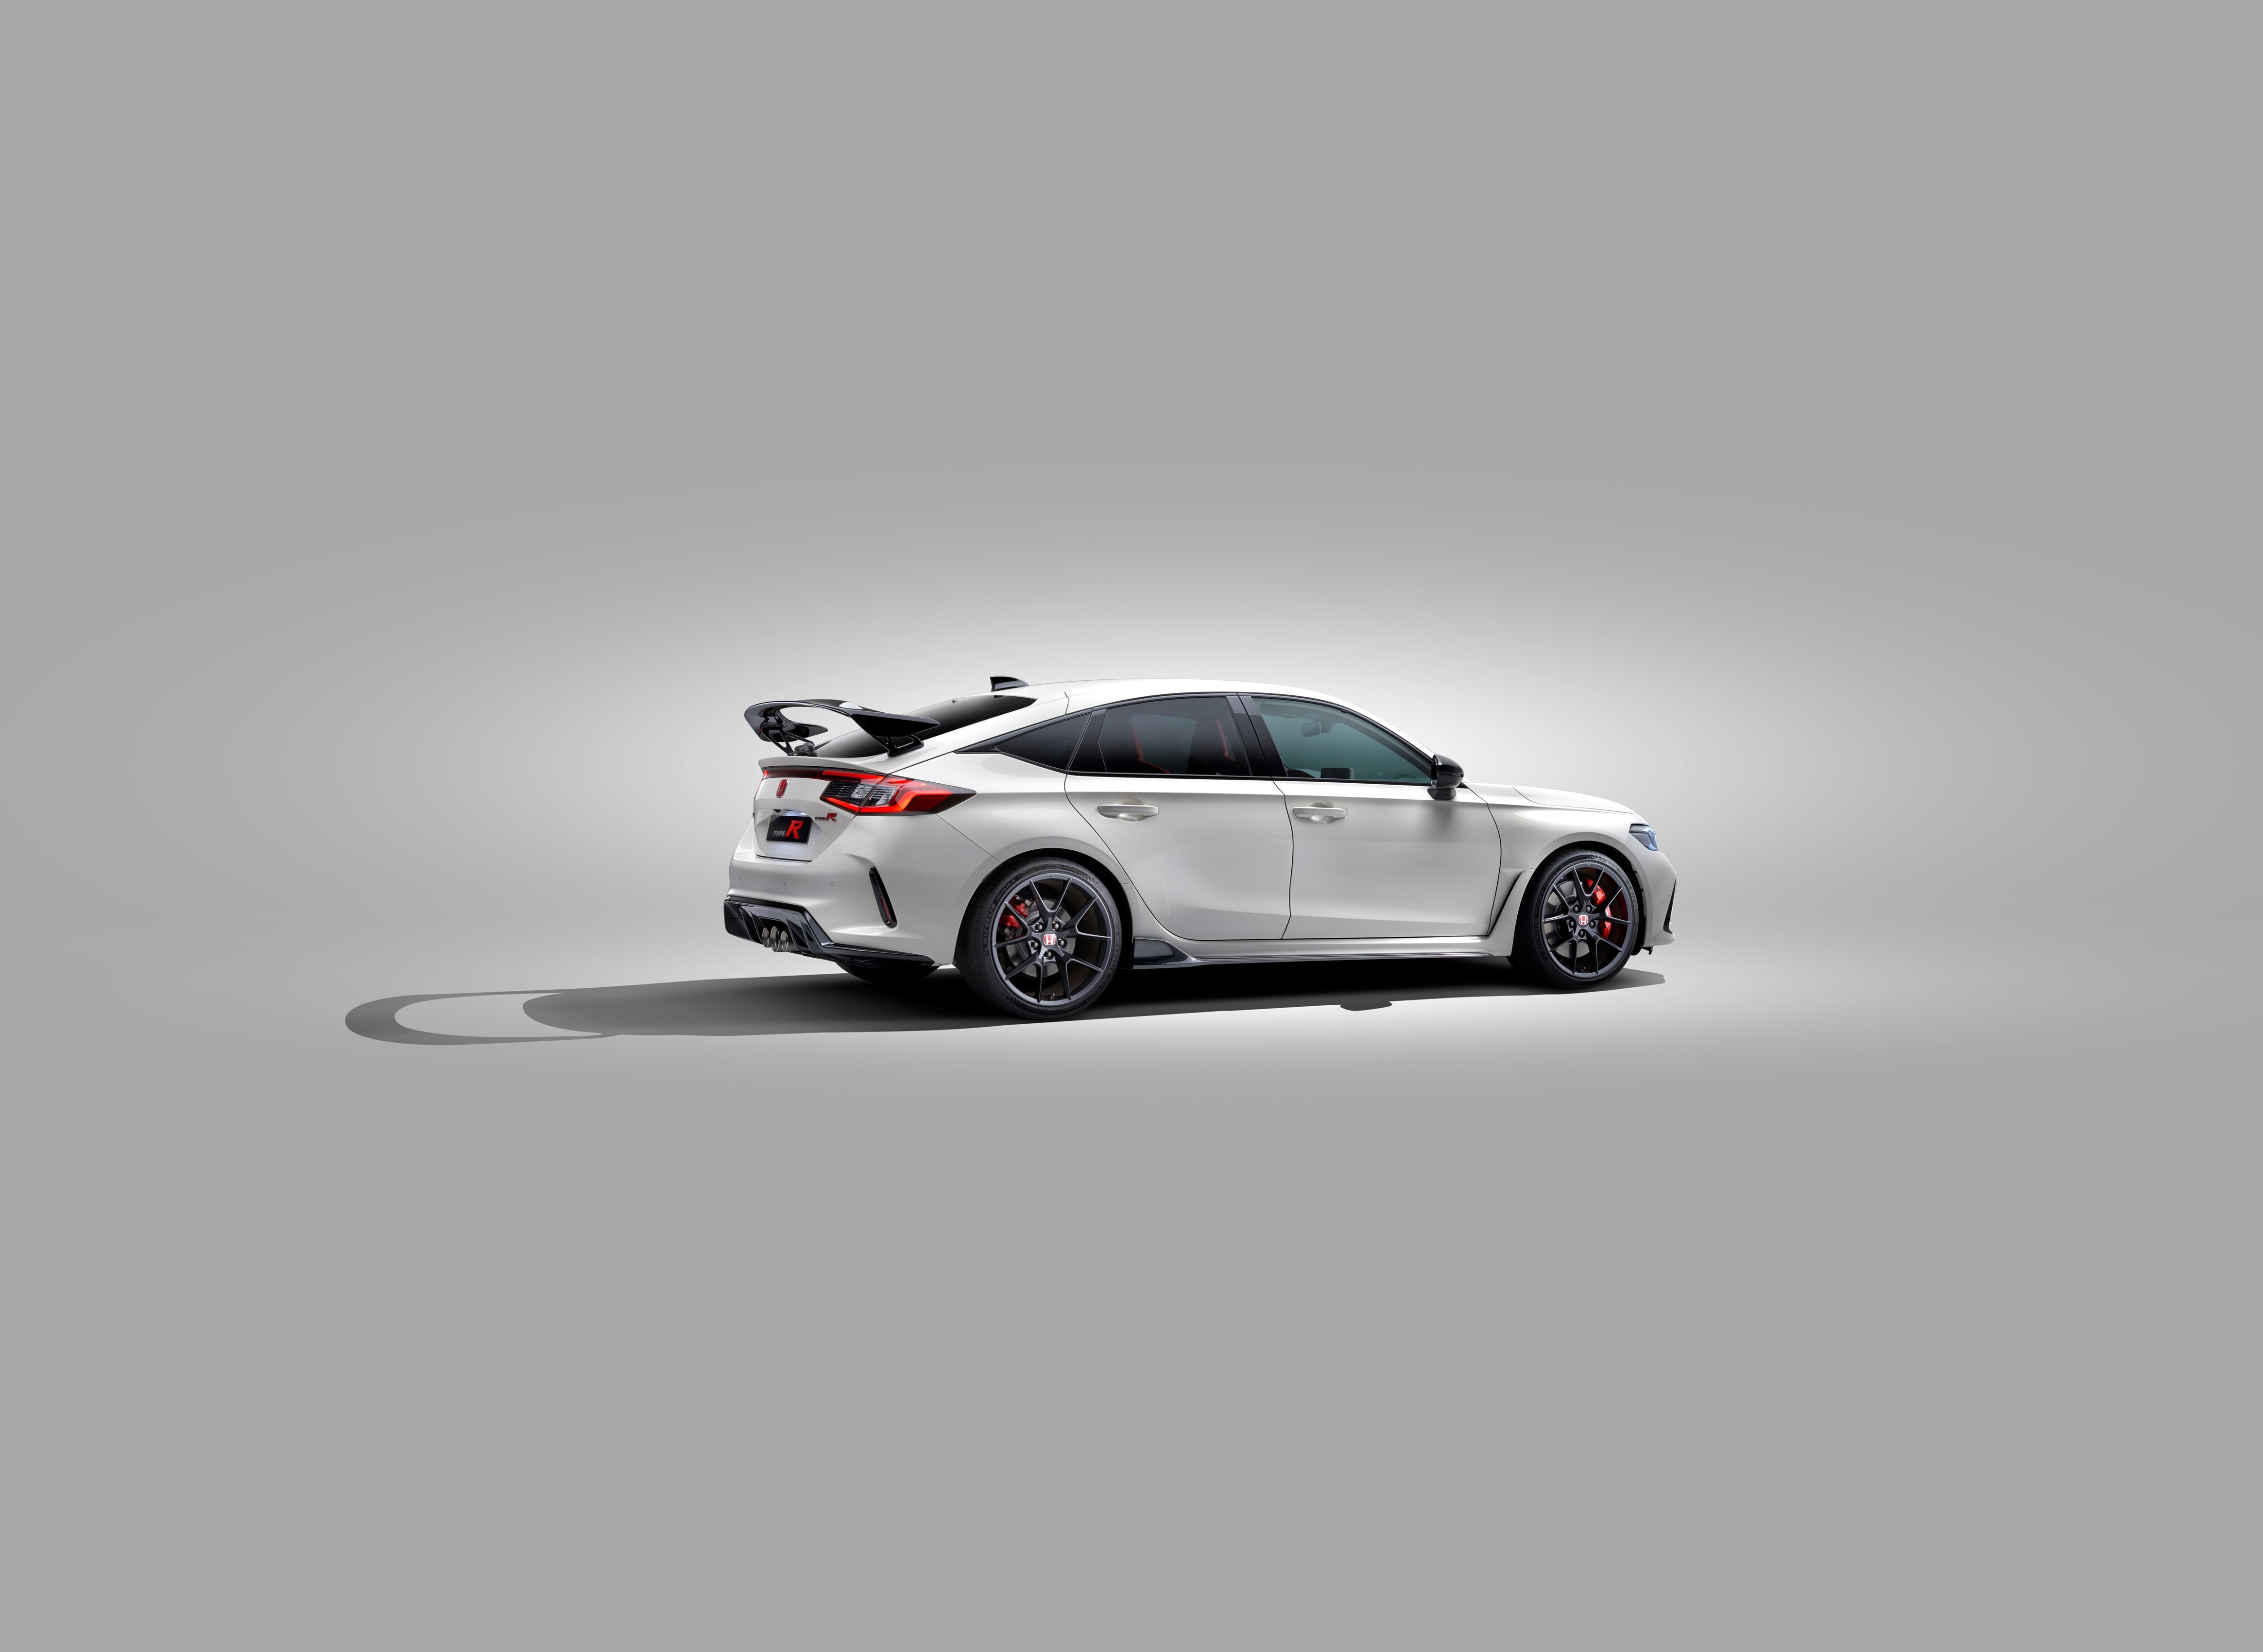 408075 Honda Civic Type R unveil images